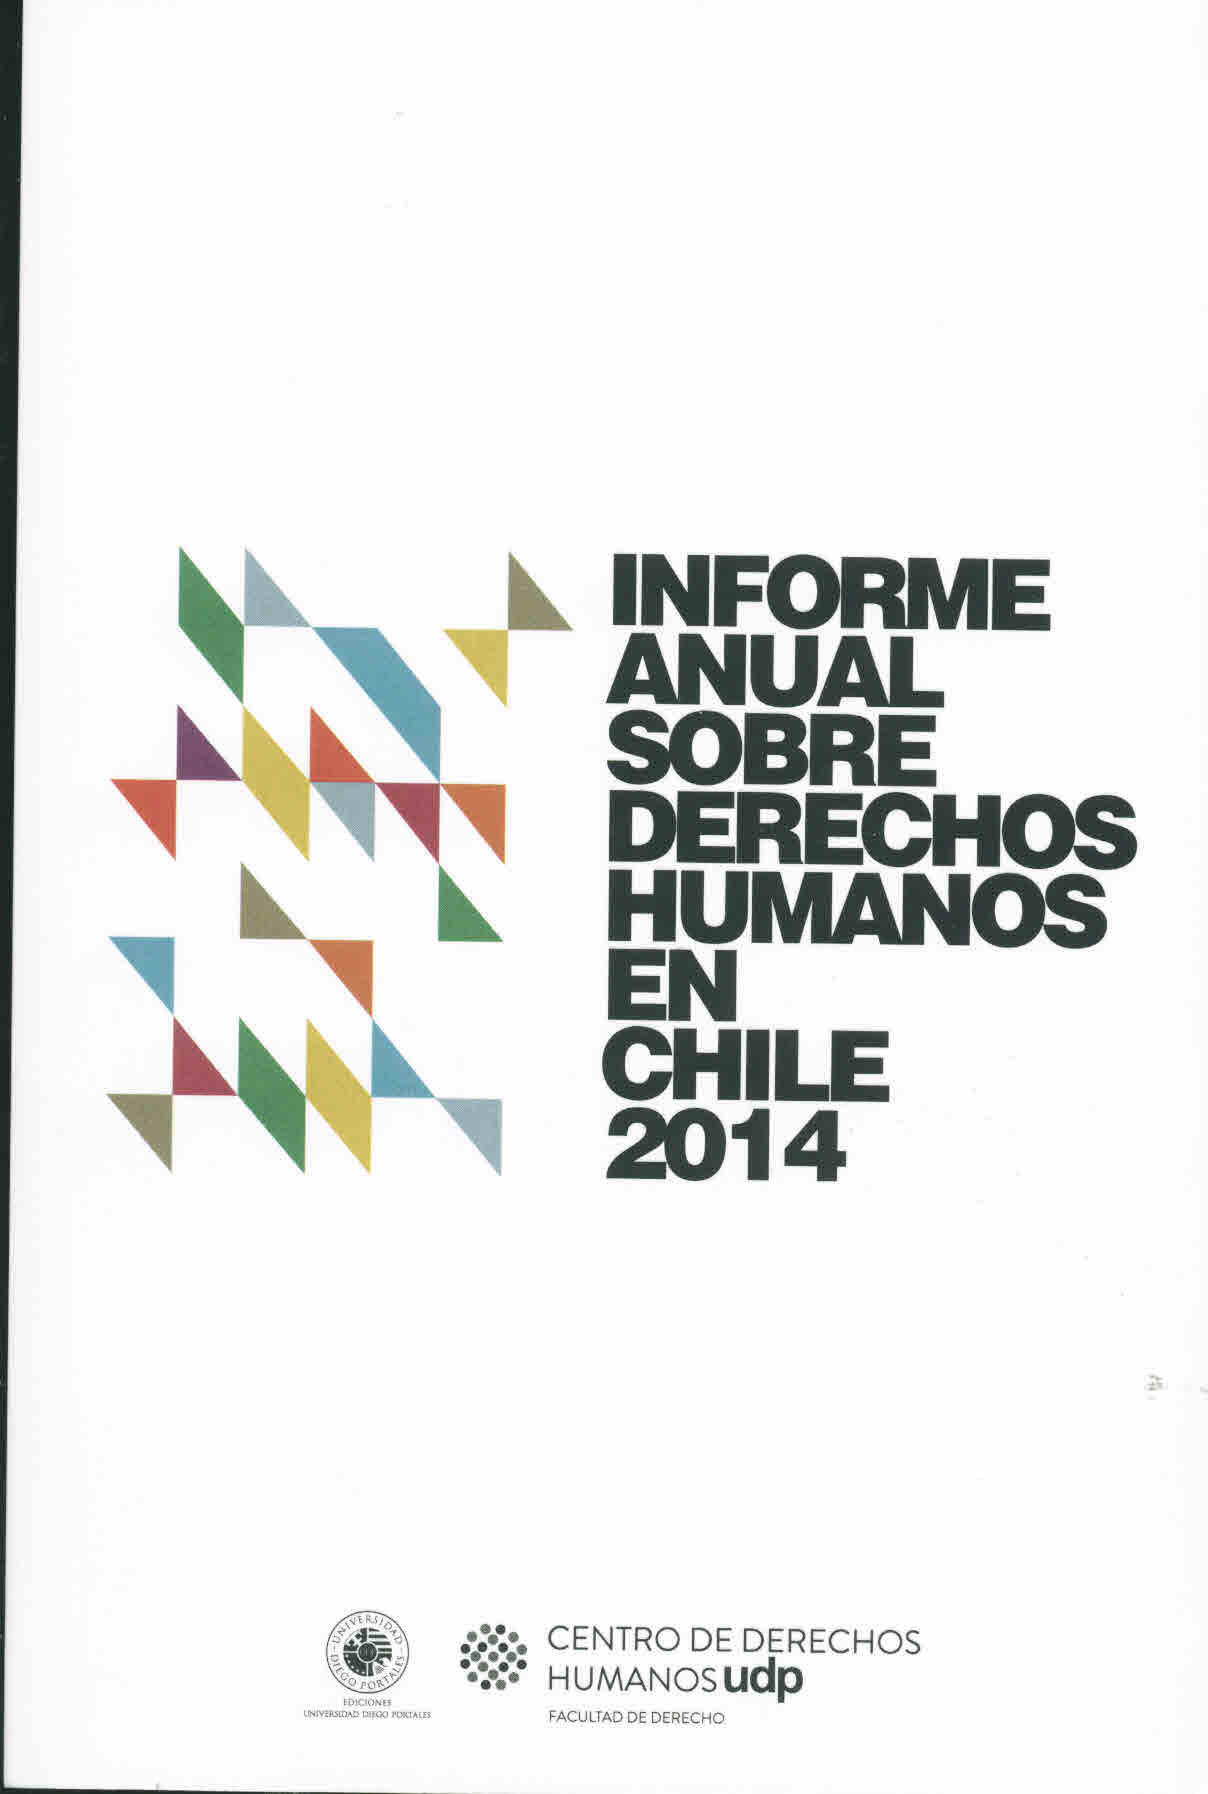 Informe anual sobre derechos humanos en Chile 2014